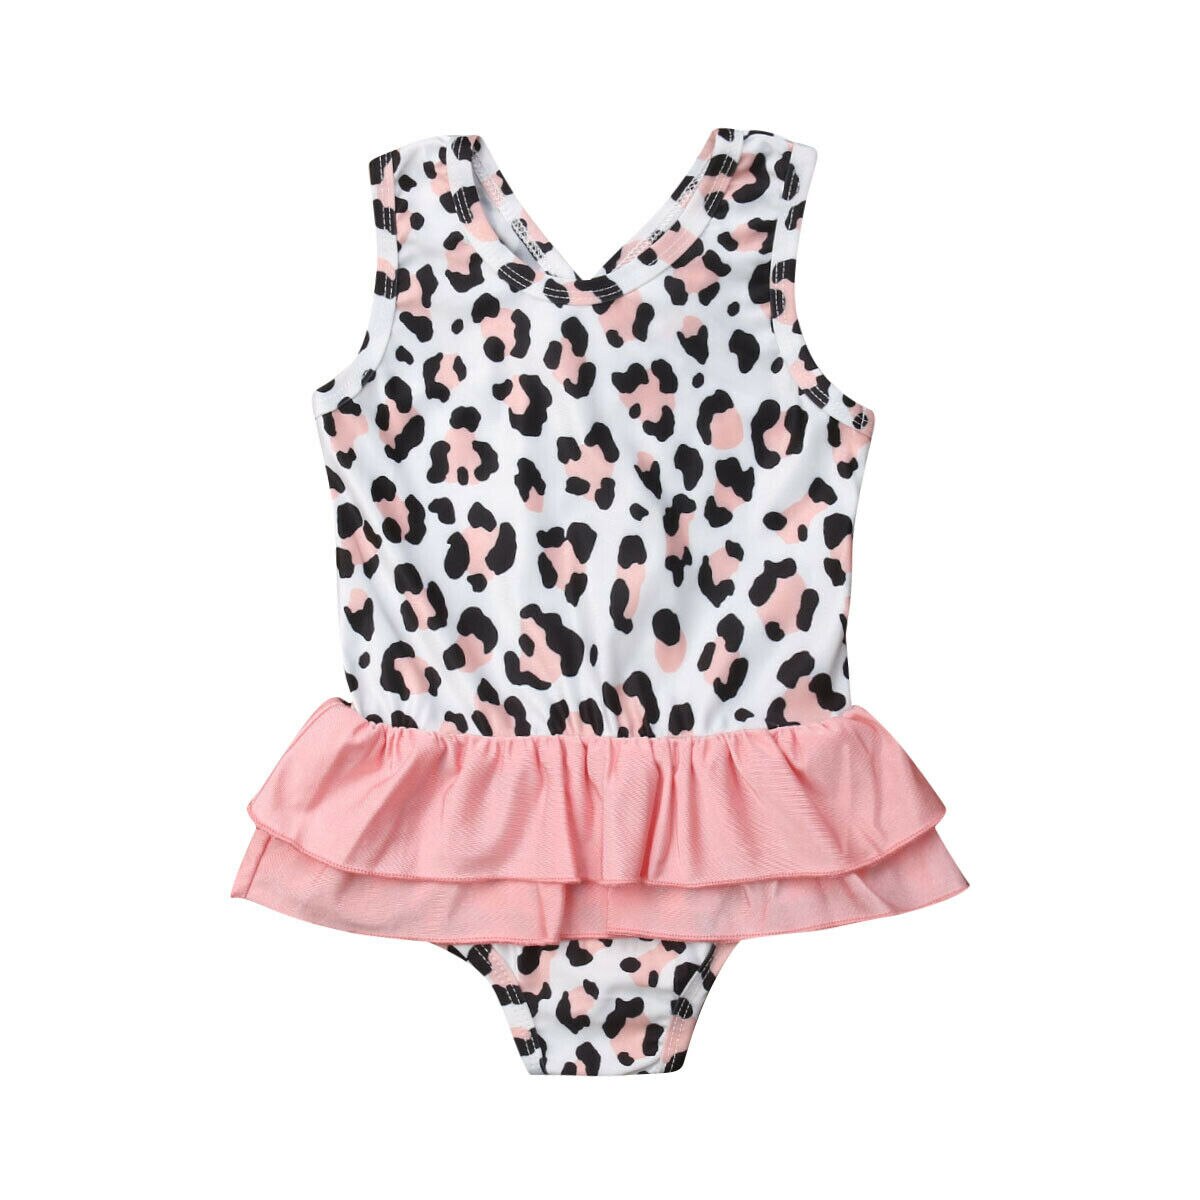 Toddler børn baby pige badedragt leopard print flæse badetøj strandtøj små piger ét stykke badedragter: 3t